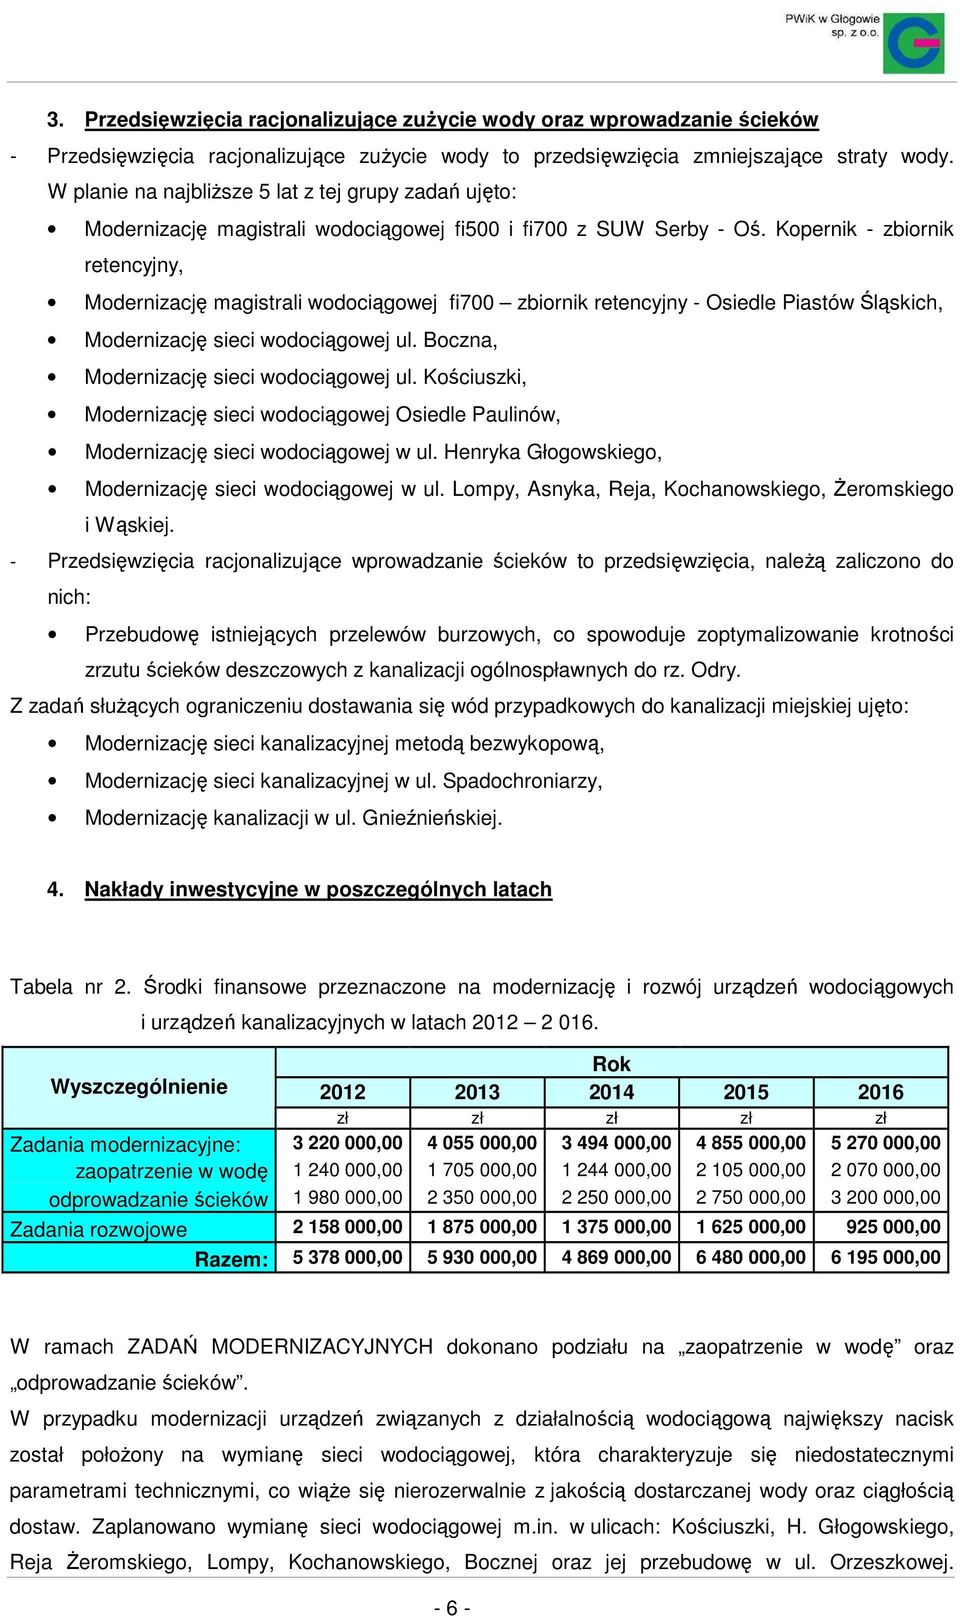 Kopernik - zbiornik retencyjny, Modernizację magistrali wodociągowej fi700 zbiornik retencyjny - Osiedle Piastów Śląskich, Modernizację sieci wodociągowej ul.